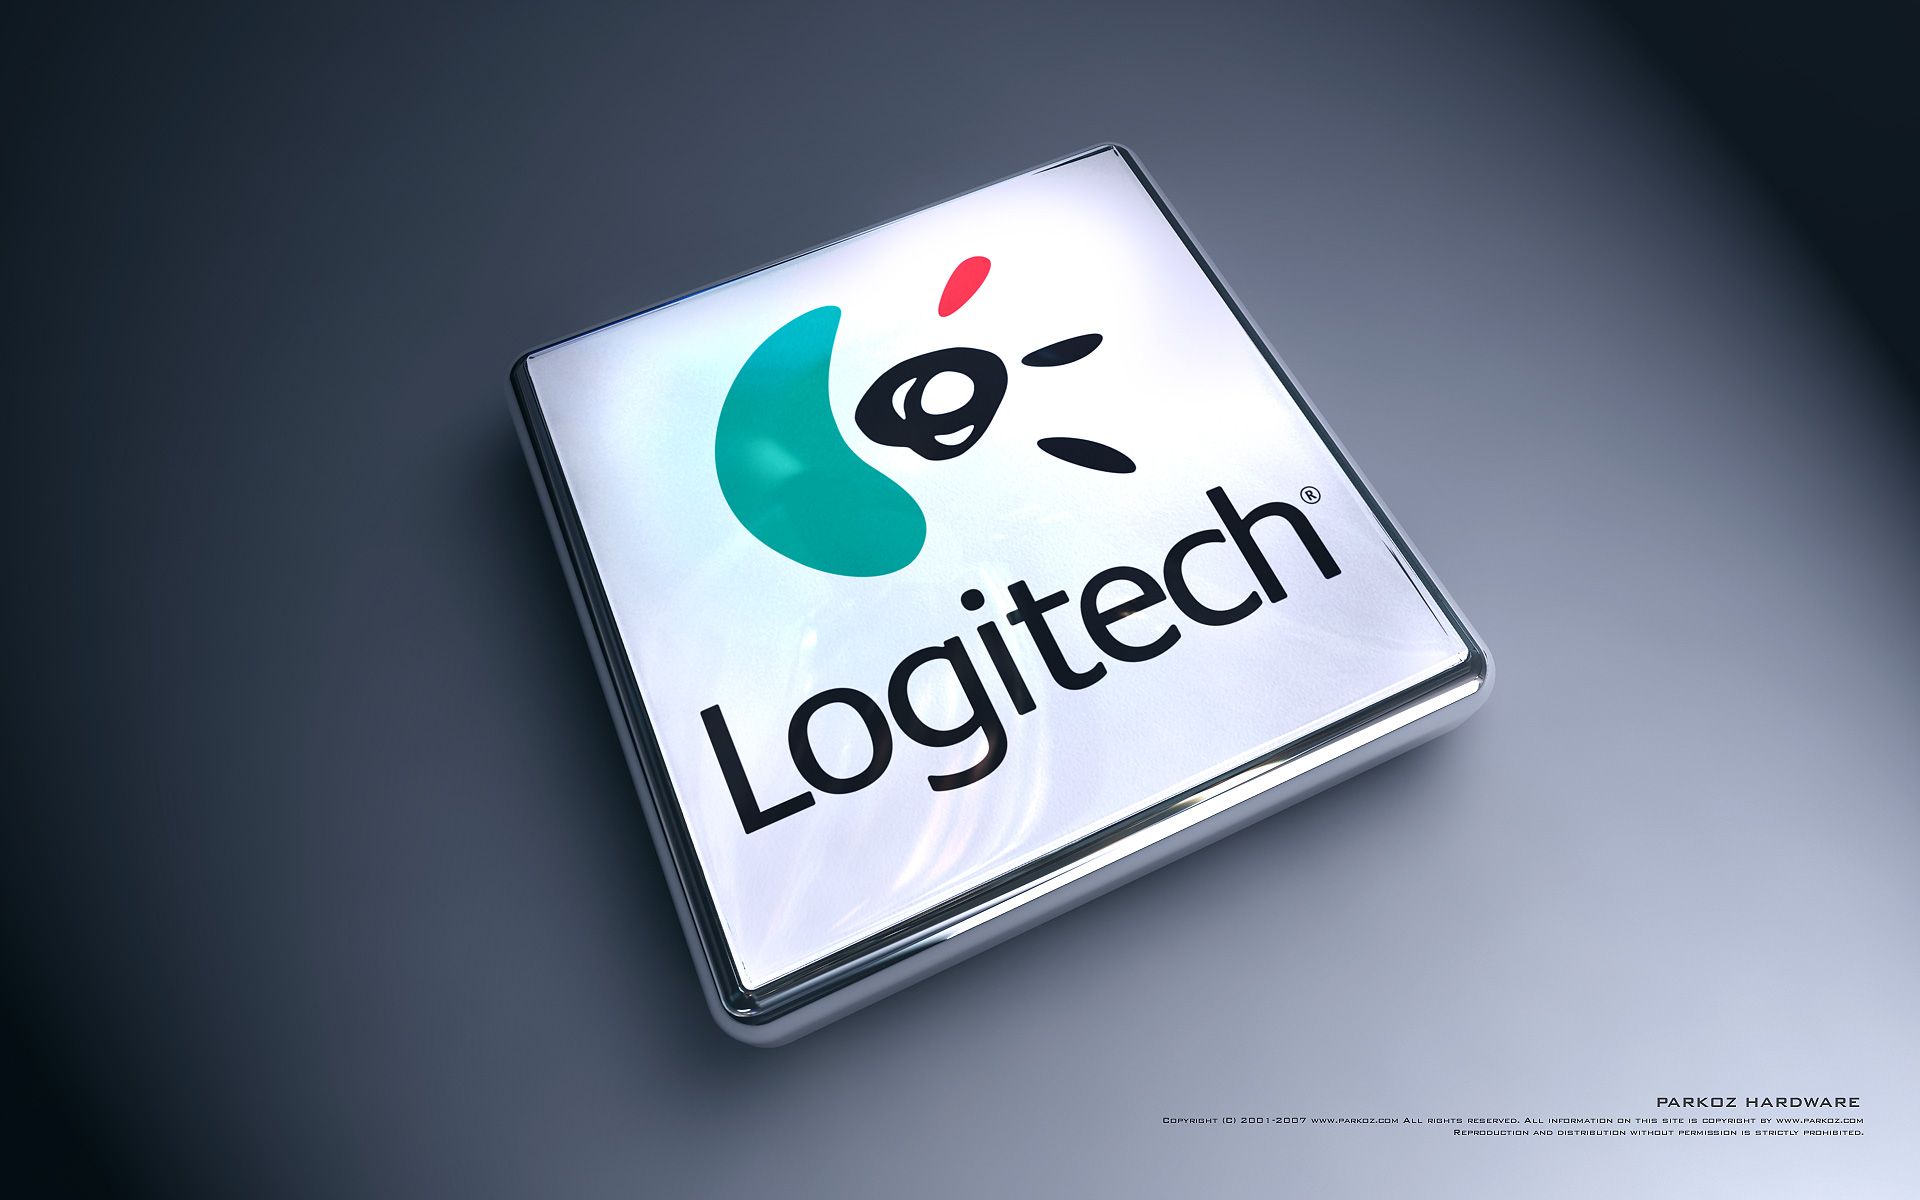 Logitech, wallpaper, web, logo, computer, brand